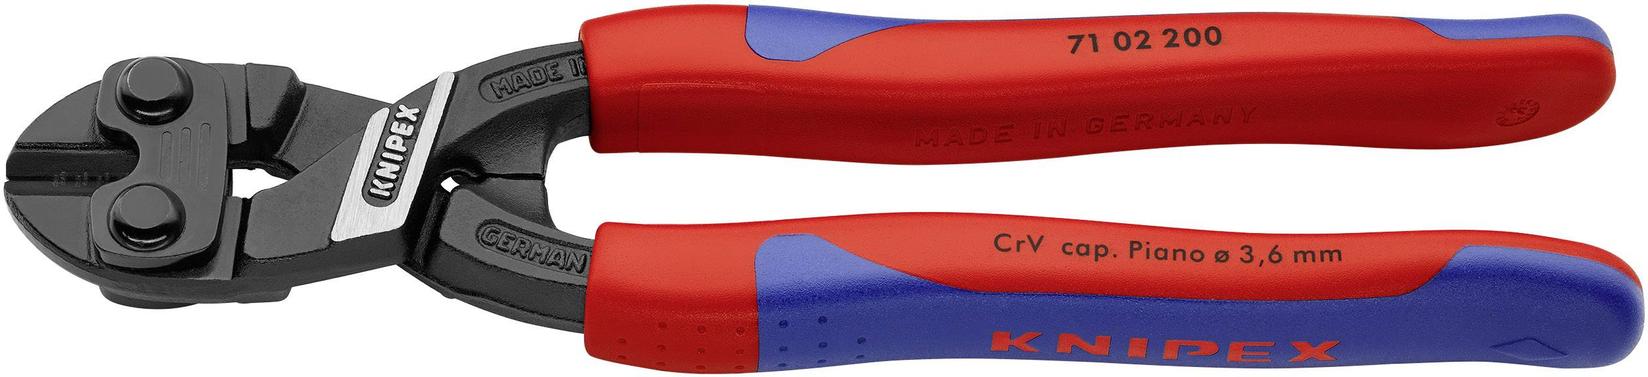 KNIPEX Sečice CoBolt 200 mm 71 02 200 crveno-plave